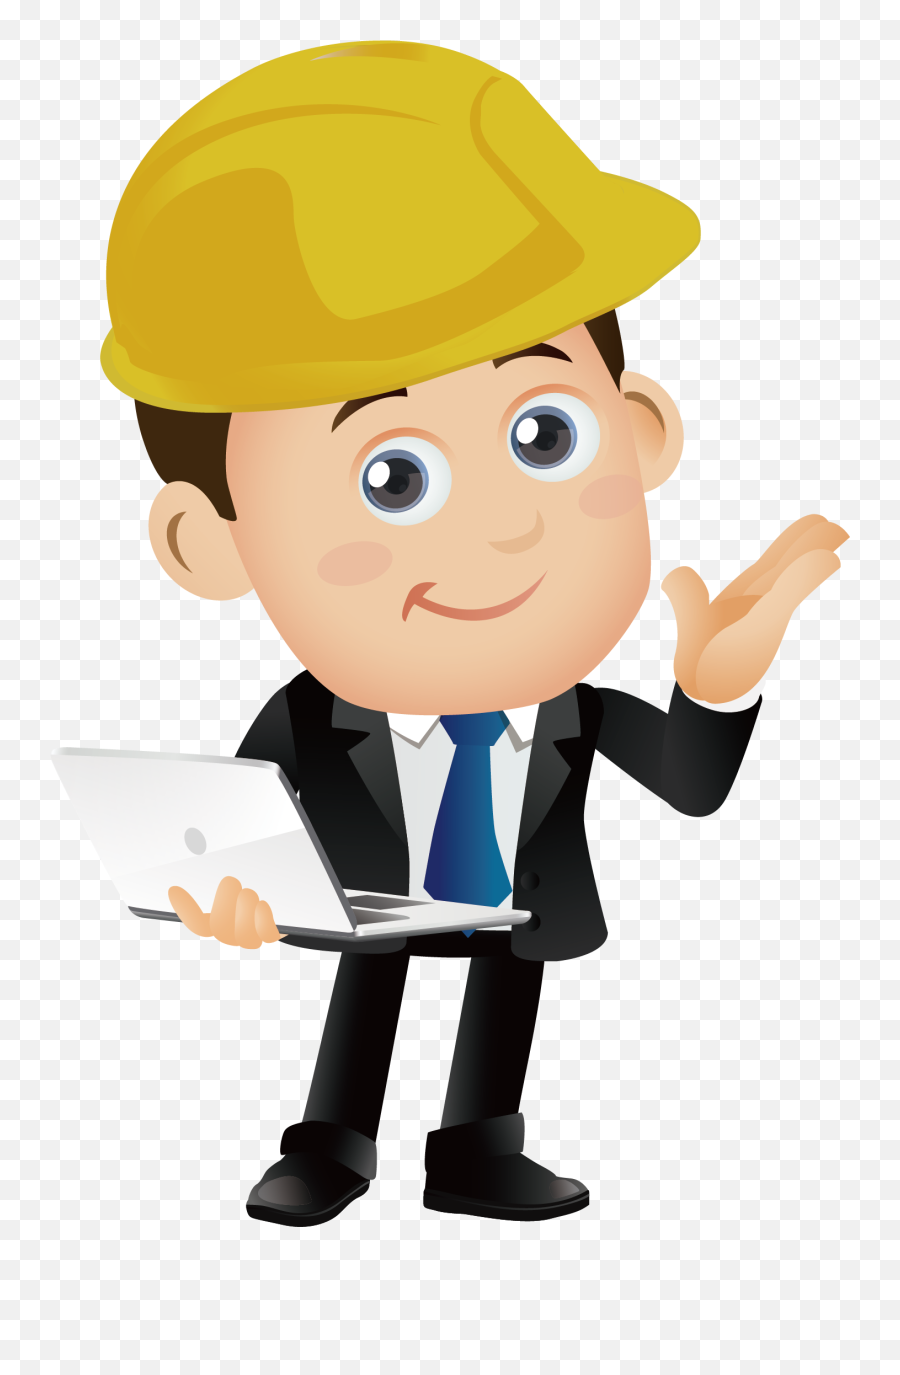 Download Engineering Engineer Free - Engineer Cartoon Png Emoji,Engineer Clipart